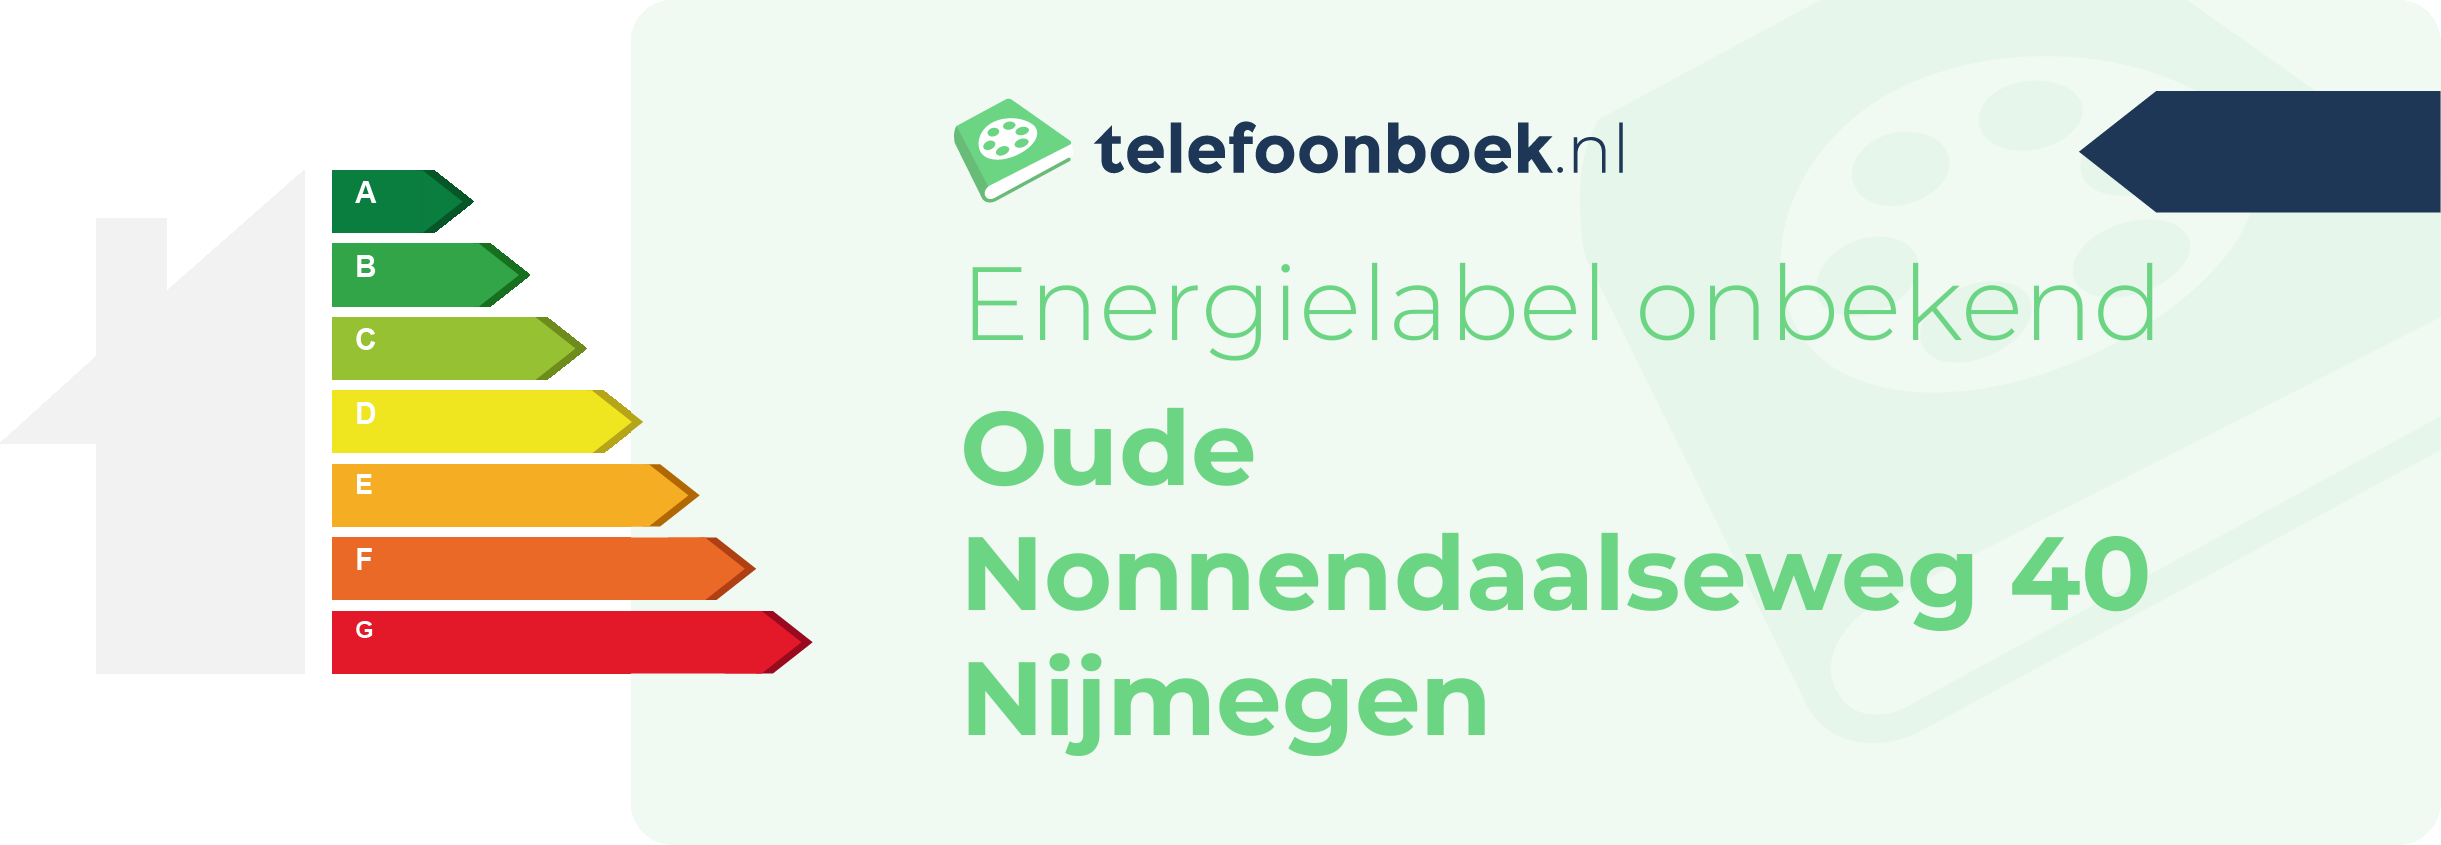 Energielabel Oude Nonnendaalseweg 40 Nijmegen